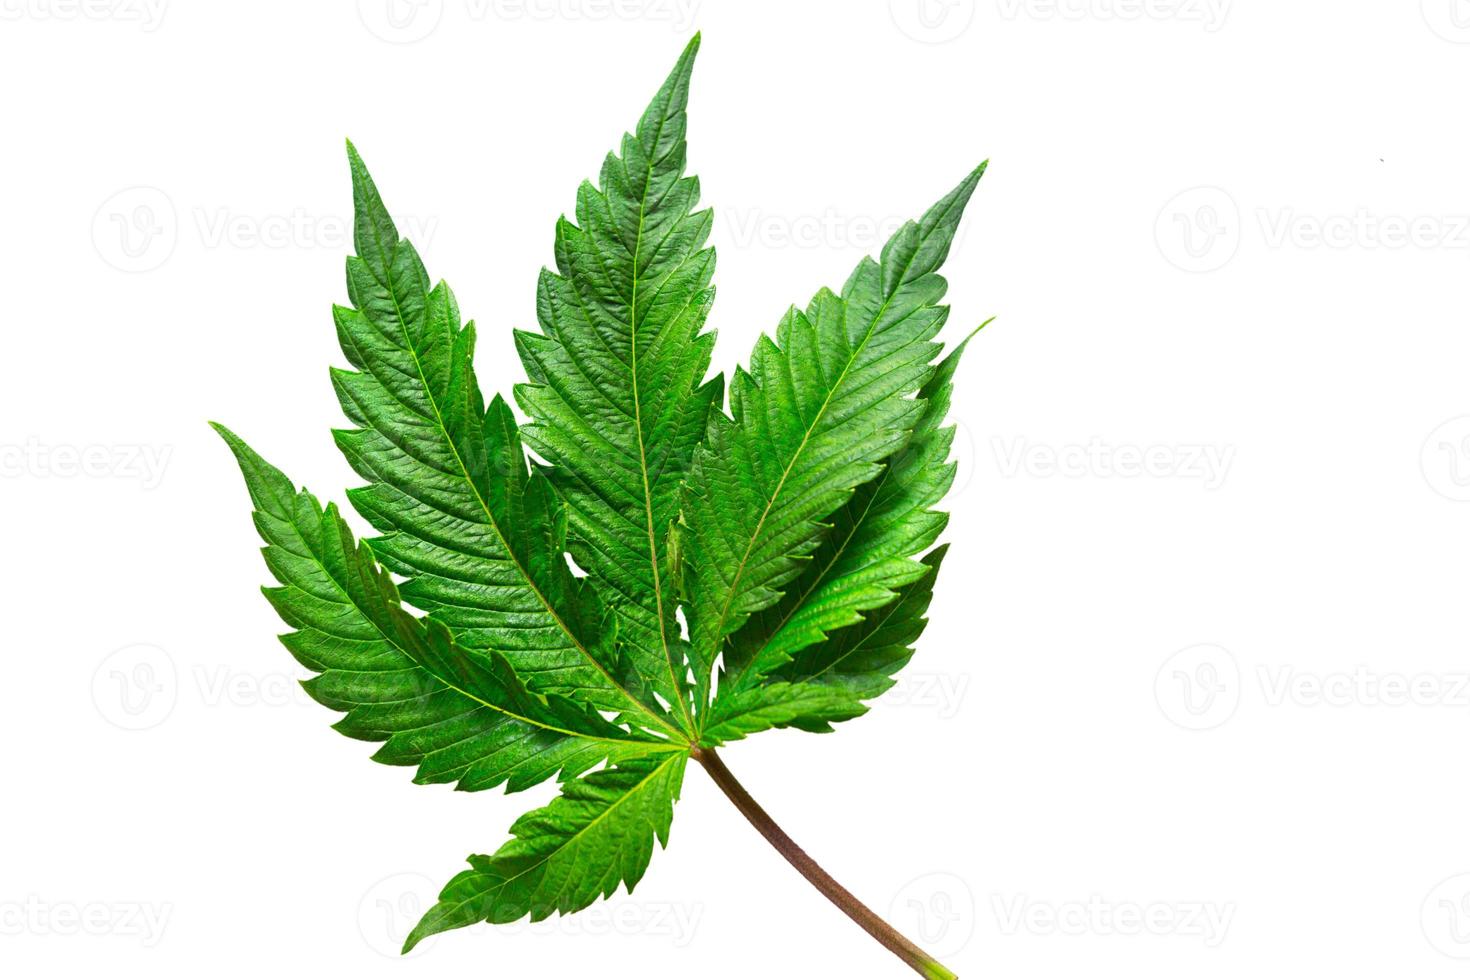 Cannabisblatt auf einem weißen Hintergrund isoliert. medizinische Marihuanablätter der Sorte Jack Herer sind eine Kreuzung aus Sativa und Indica. foto